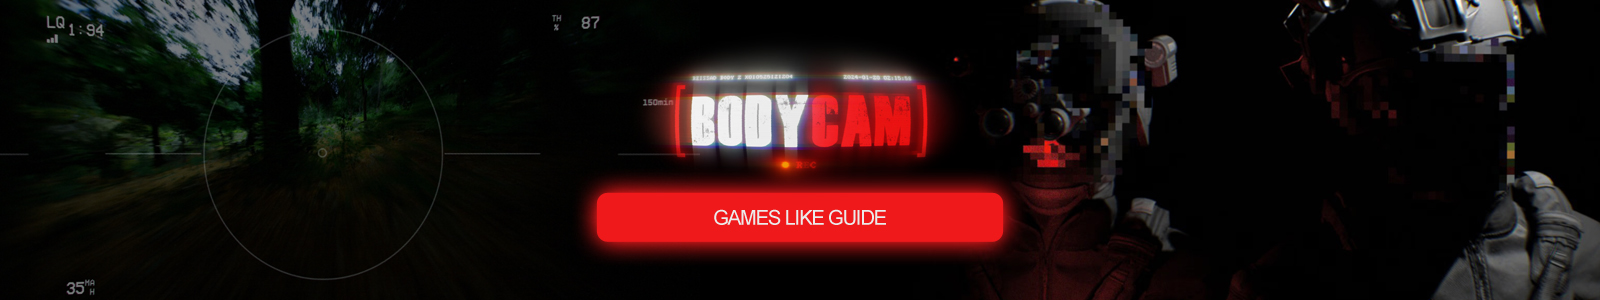 Guía de juegos similares a Bodycam